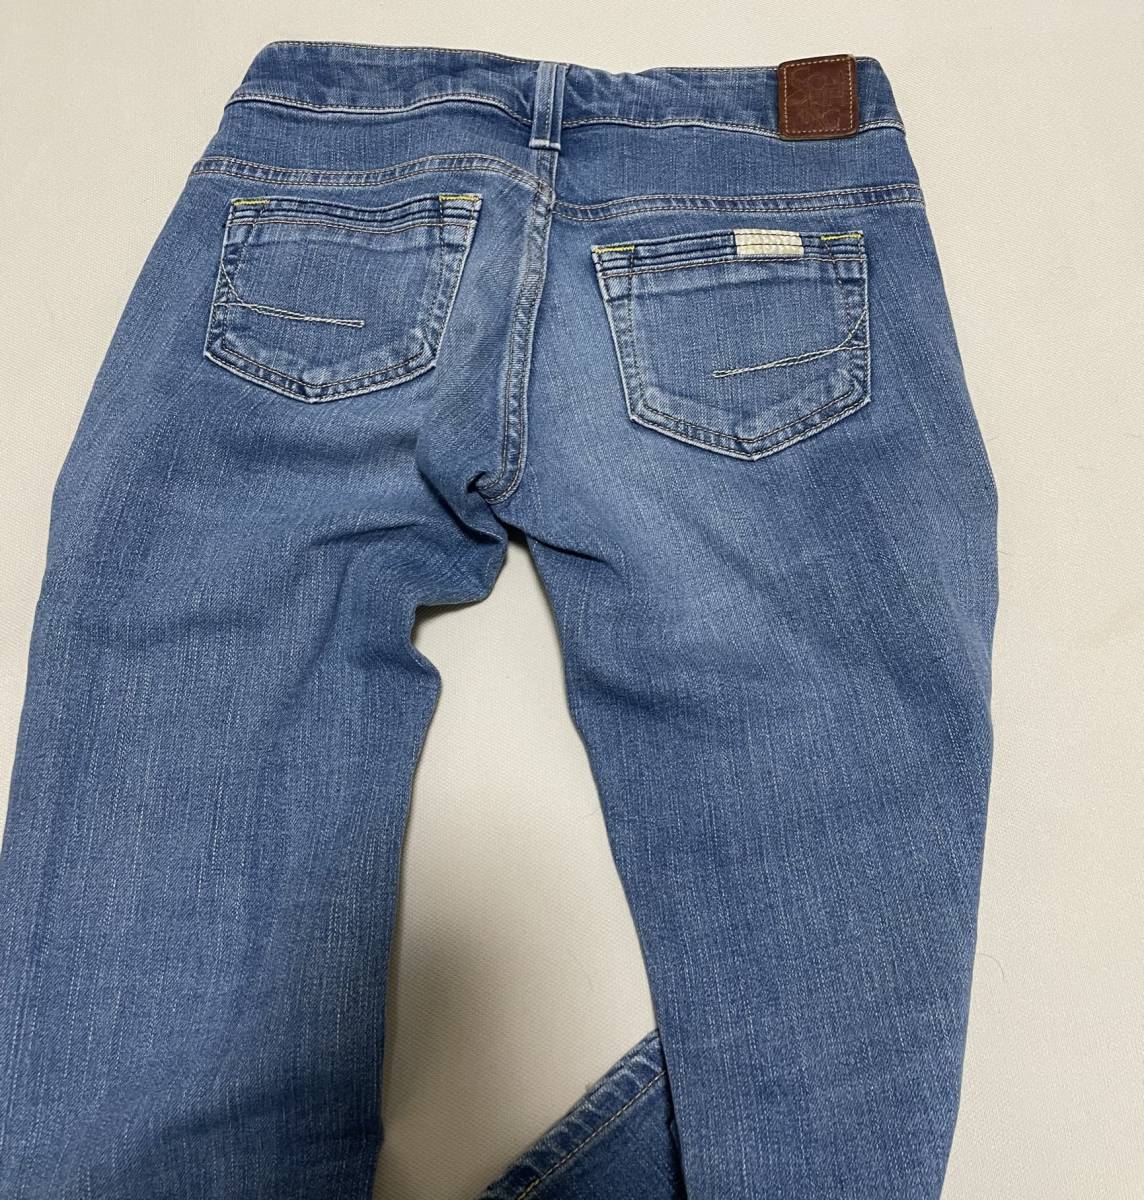  Something джинсы половина край длина 8 минут длина S2250 XS. цвет стрейч обтягивающий 